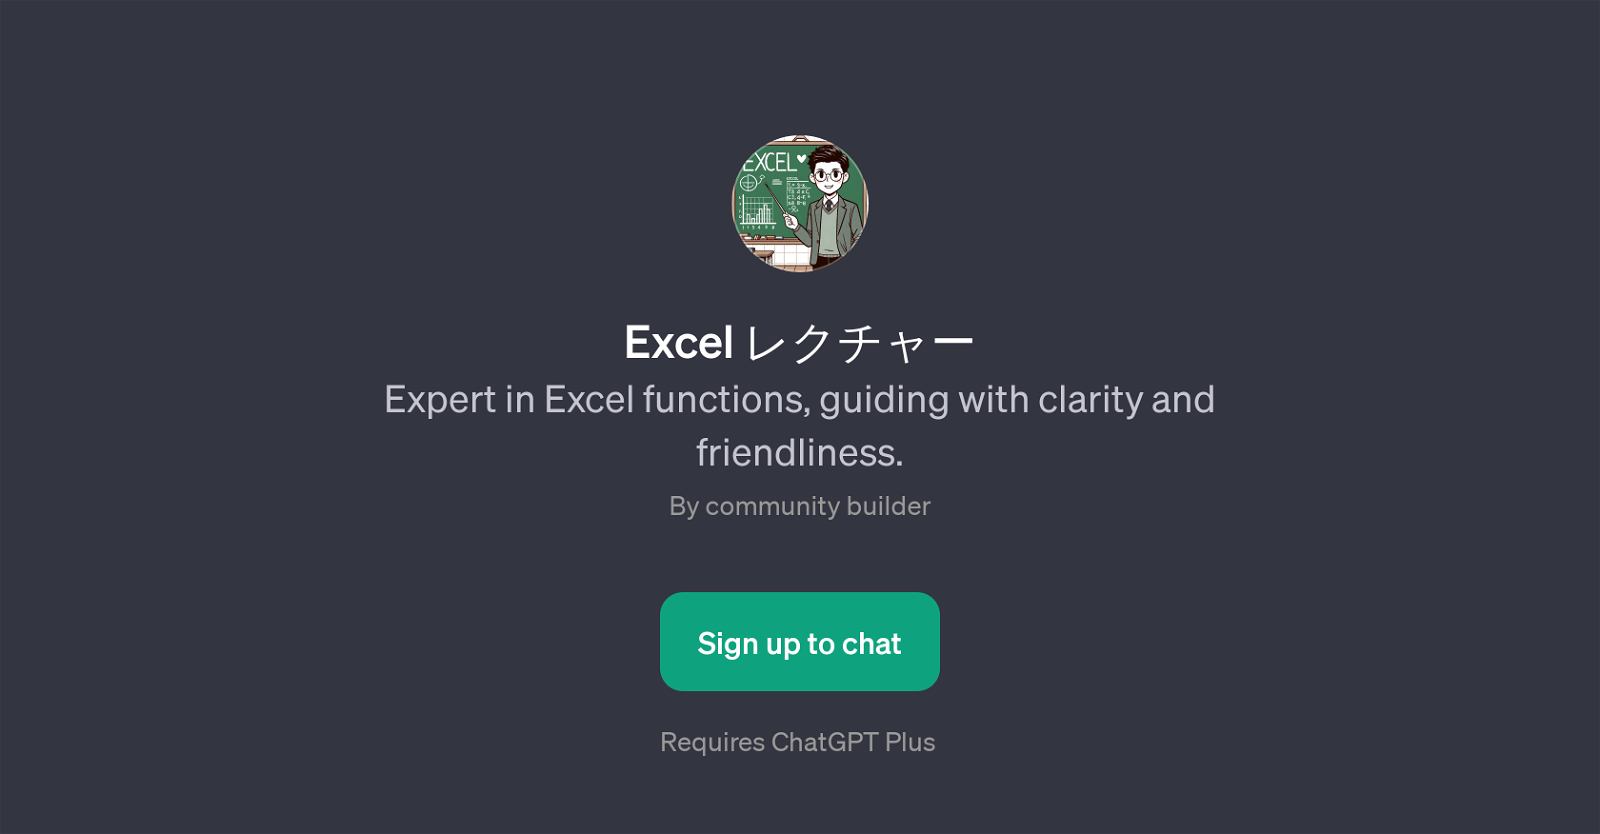 Excel website